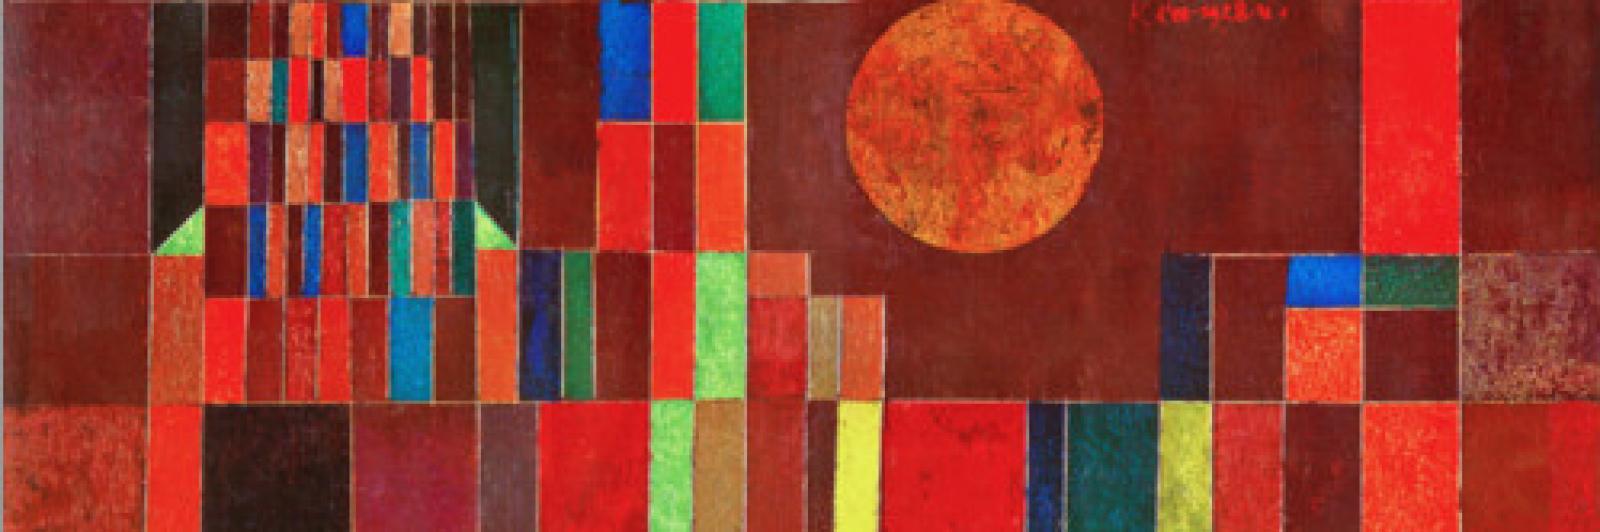 Quadro "Castello e Sole" di Paul Klee